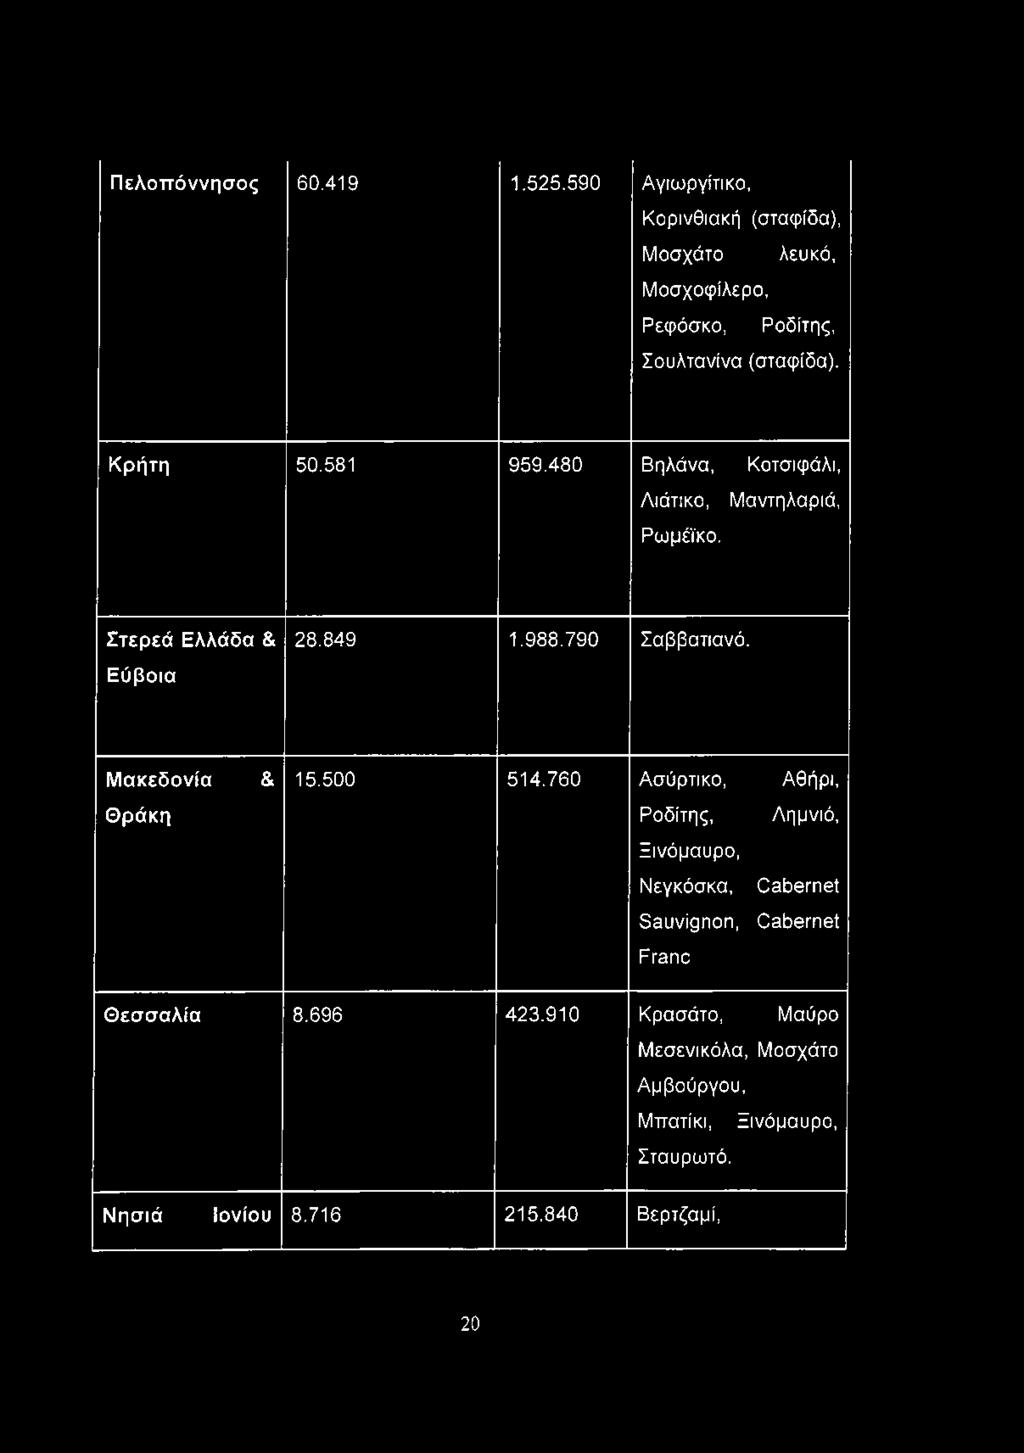 480 Βηλάνα, Κοτσιφάλι, Λιάτικο, Μαντηλαριά, Ρωμέϊκο. Στερεά Ελλάδα & Εύβοια 28.849 1.988.790 Σαββατιανό. Μακεδονία Θράκη & 15.